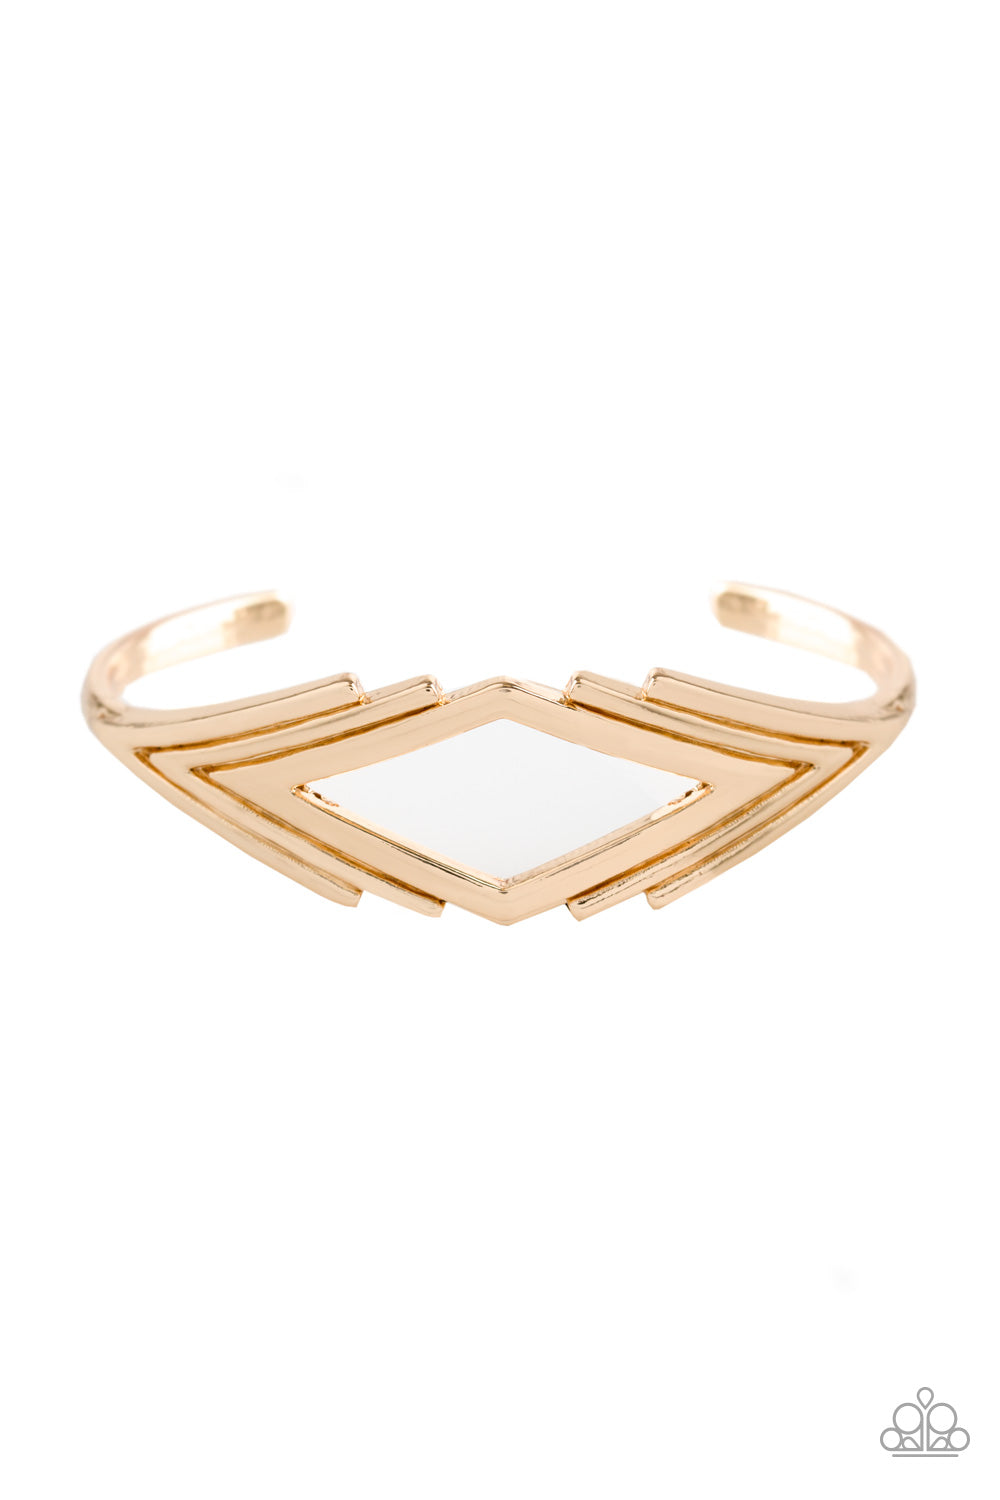 In Total De-NILE - Gold Bracelet - Paparazzi Accessories